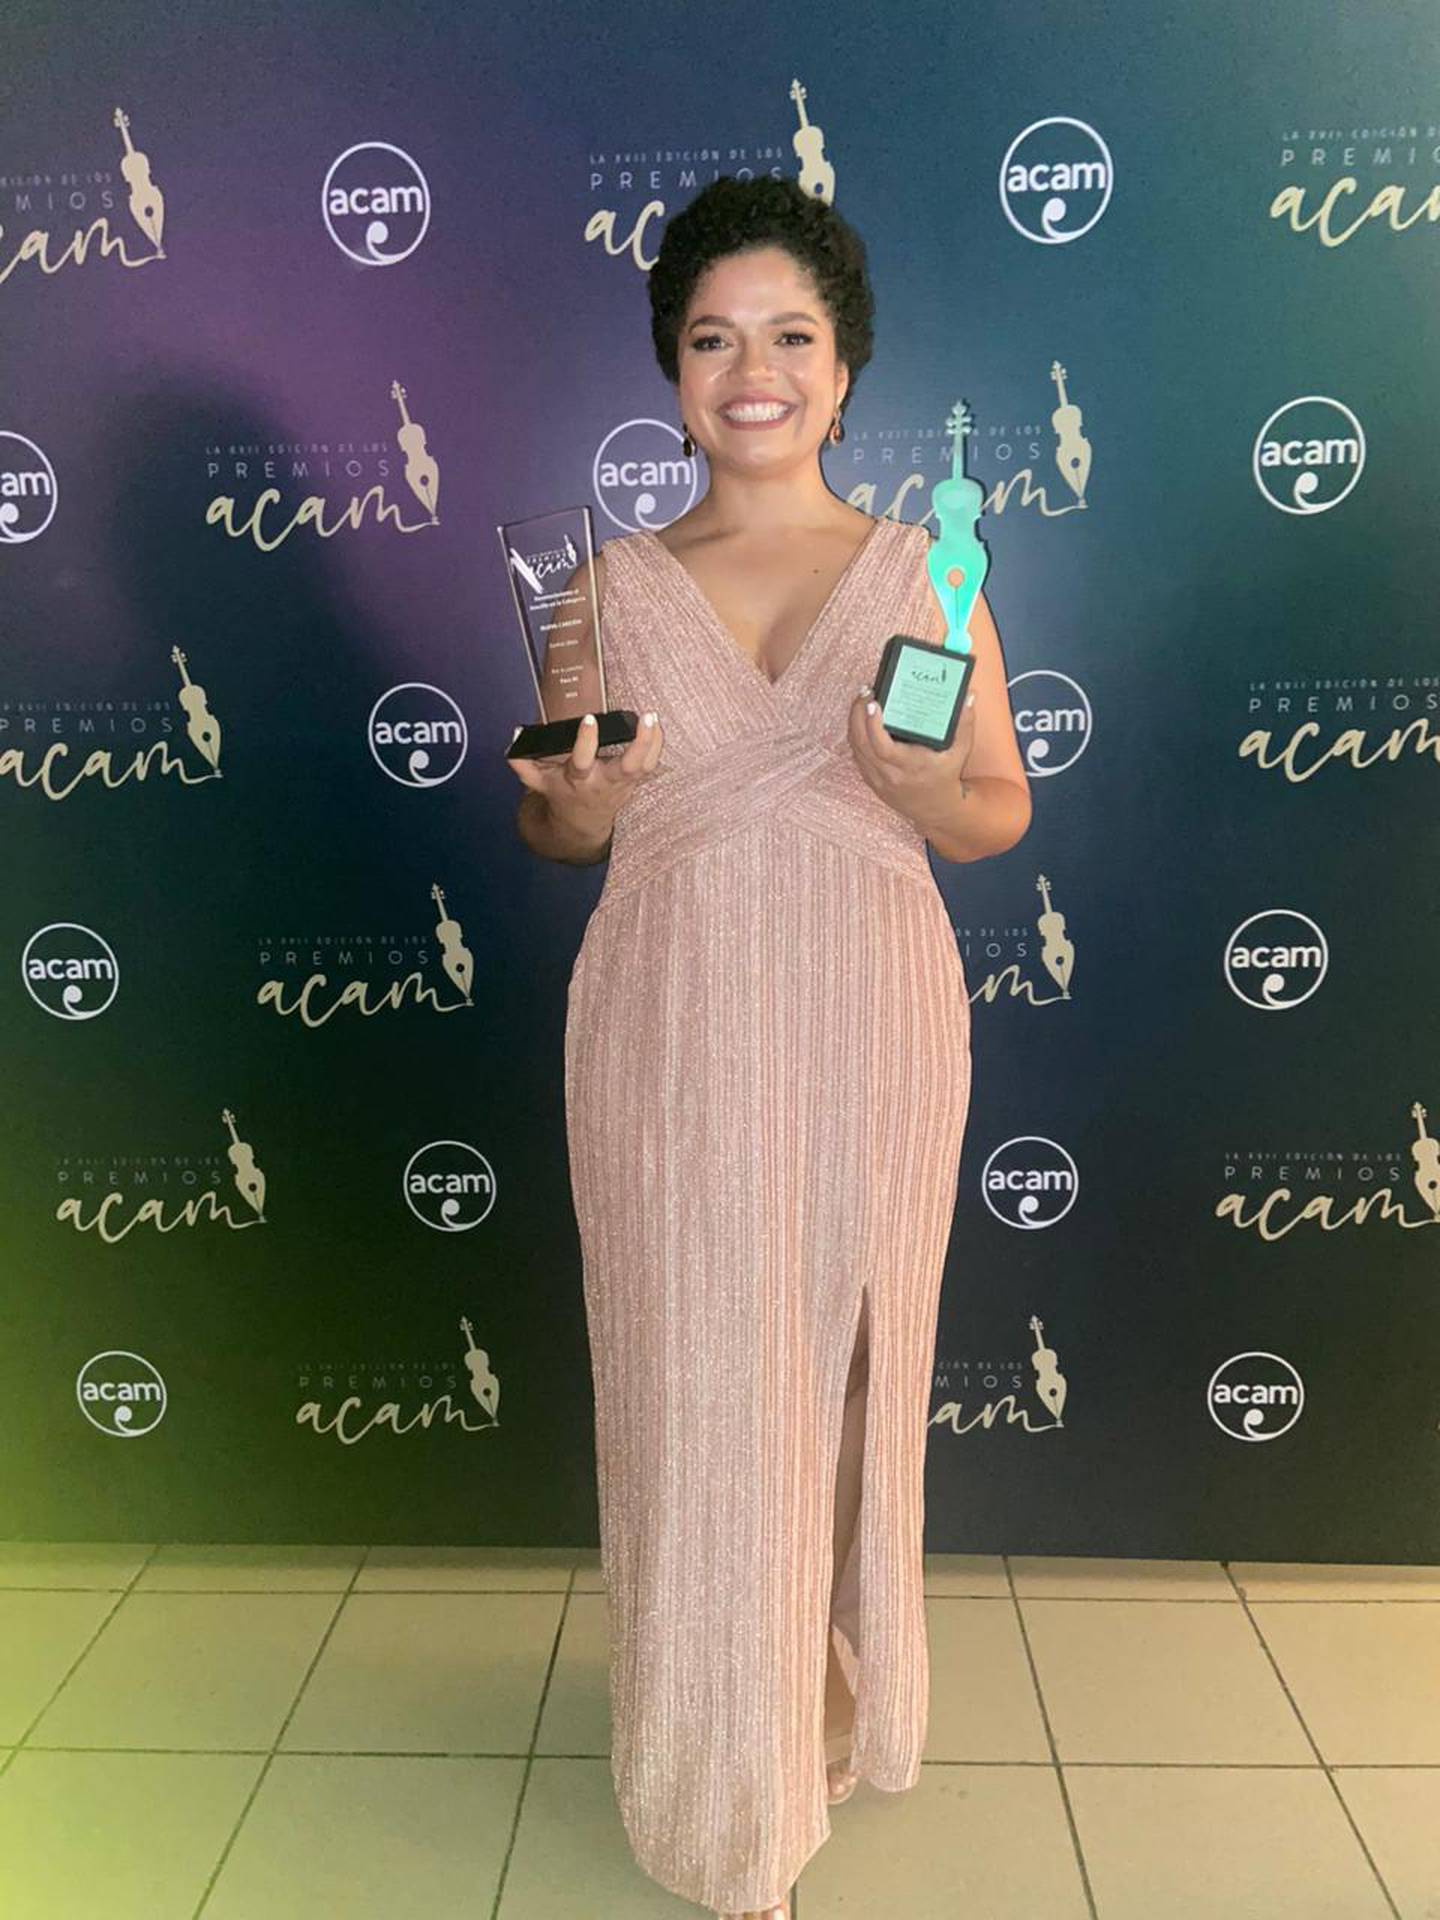 La cantautora nicaragüense Ceshia Ubau ganó el premio del “Mejor Sencillo Nueva Canción” por su canción “Para Mí”, además, recibieron premio los productores de su disco “Luz”, Rigoberto Alvarado y Brandon Cores, en la categoría “Productores del año” de los premios ACAM 2023